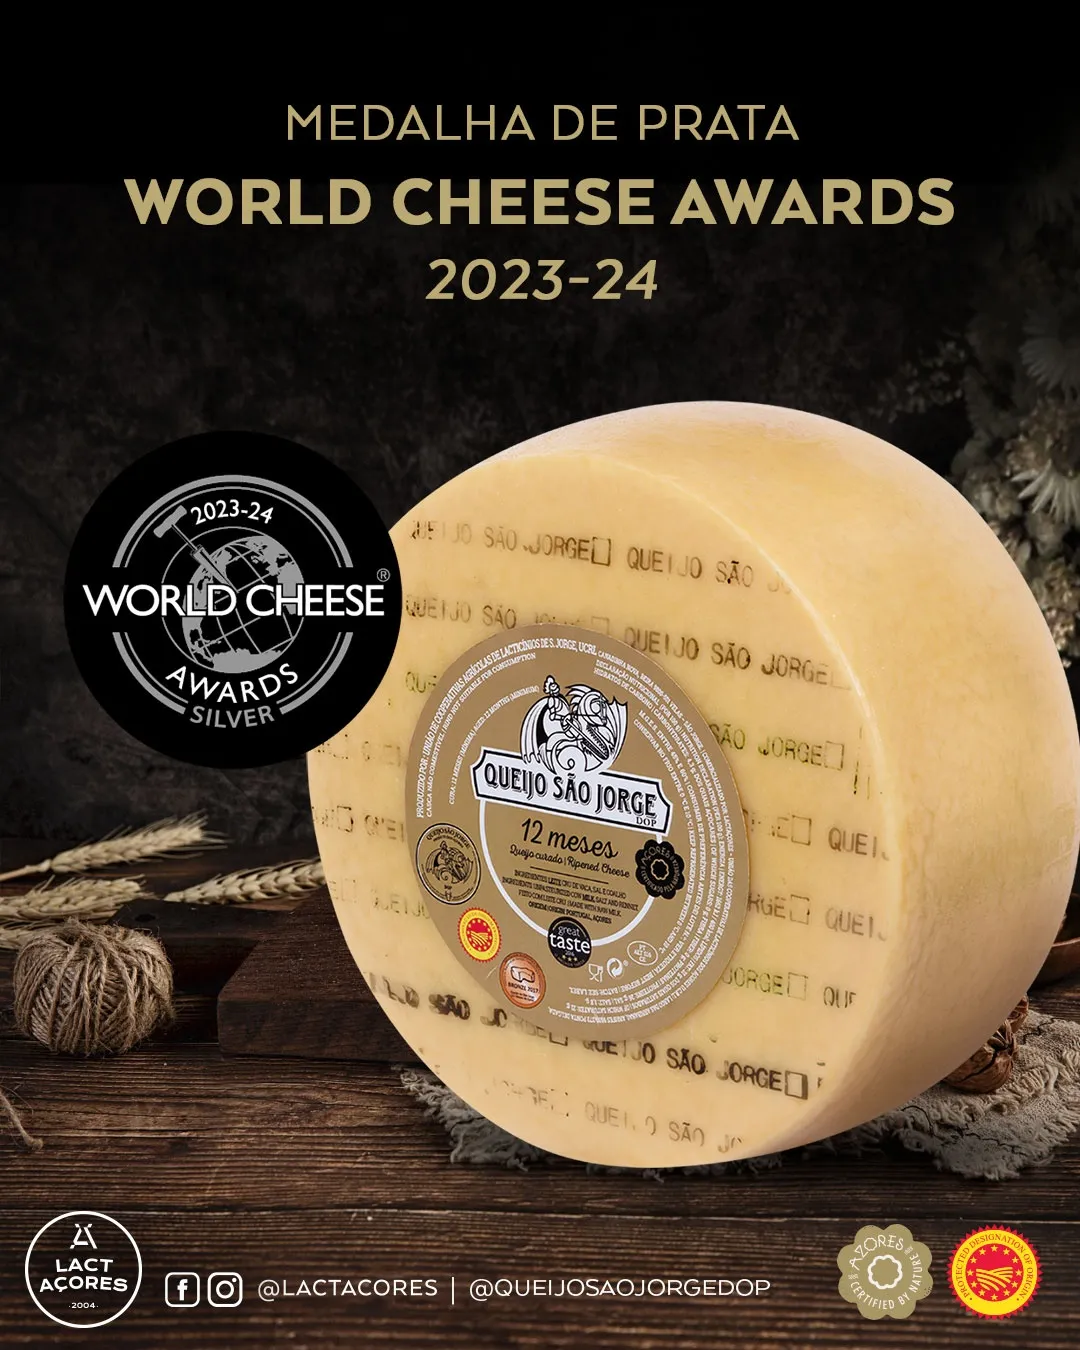 Queijo SÃO JORGE DOP 4M e Queijo VELHO SÃO MIGUEL 9M  premiados com medalhas de Ouro no World Cheese Awards